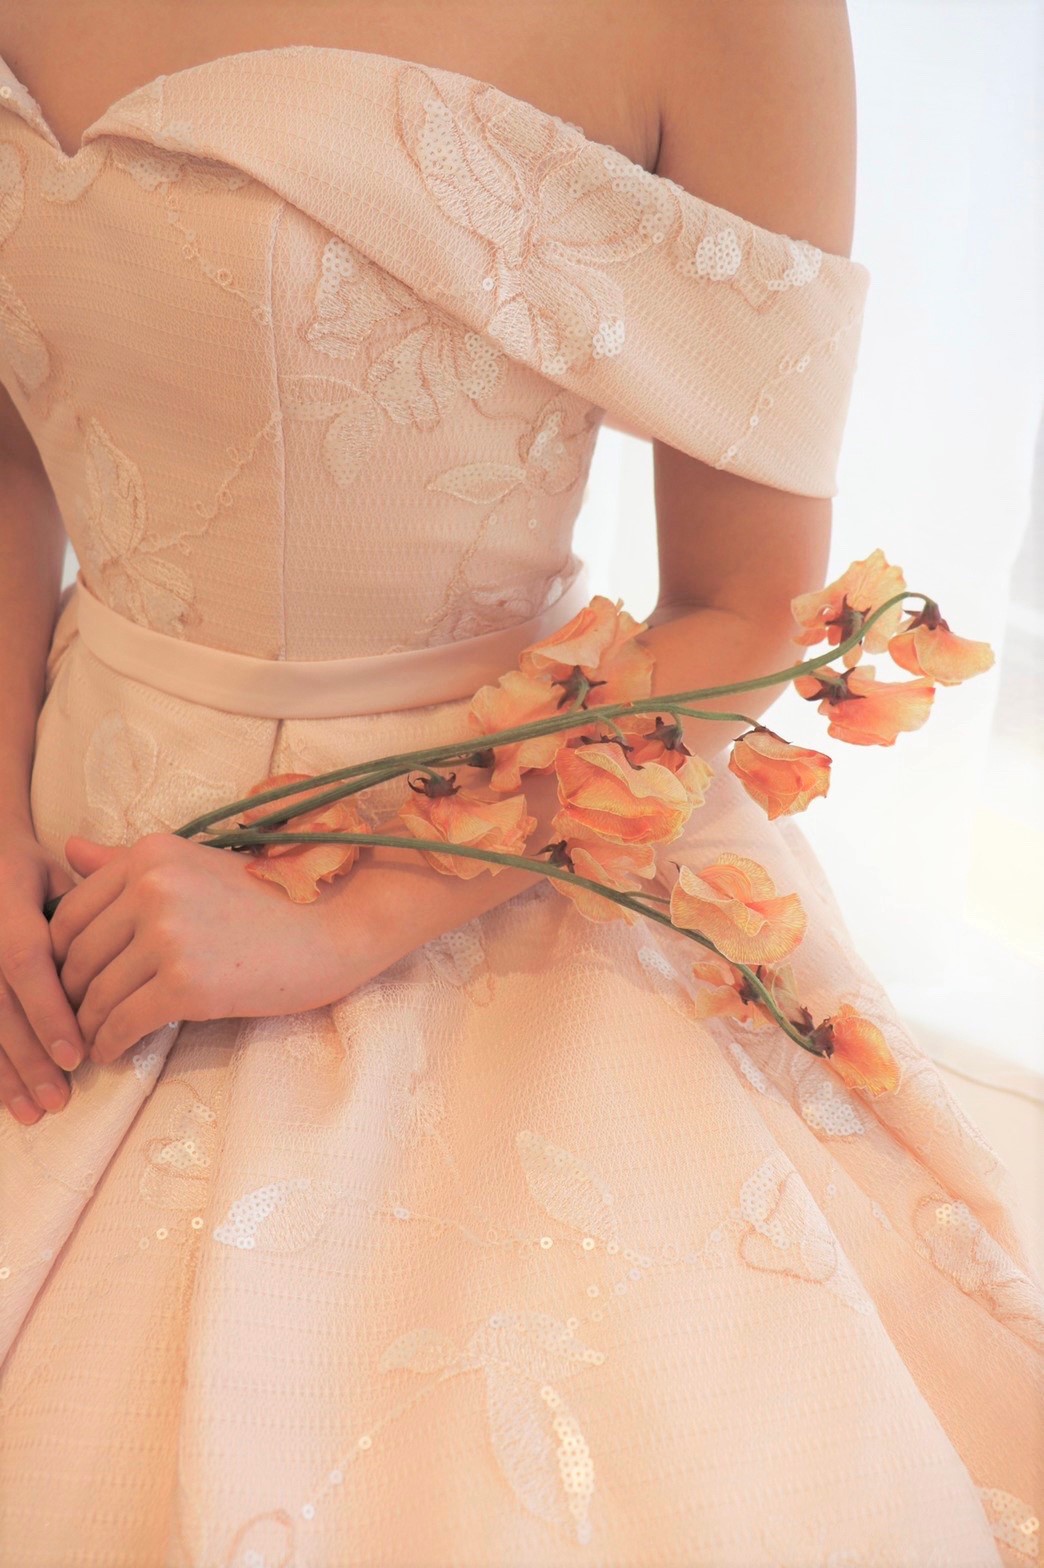 グリーン溢れる会場でアットホームでナチュラルなパーティーがイメージの花嫁におすすめのザトリートドレッシング名古屋店にて人気の淡いピンクのカラードレス